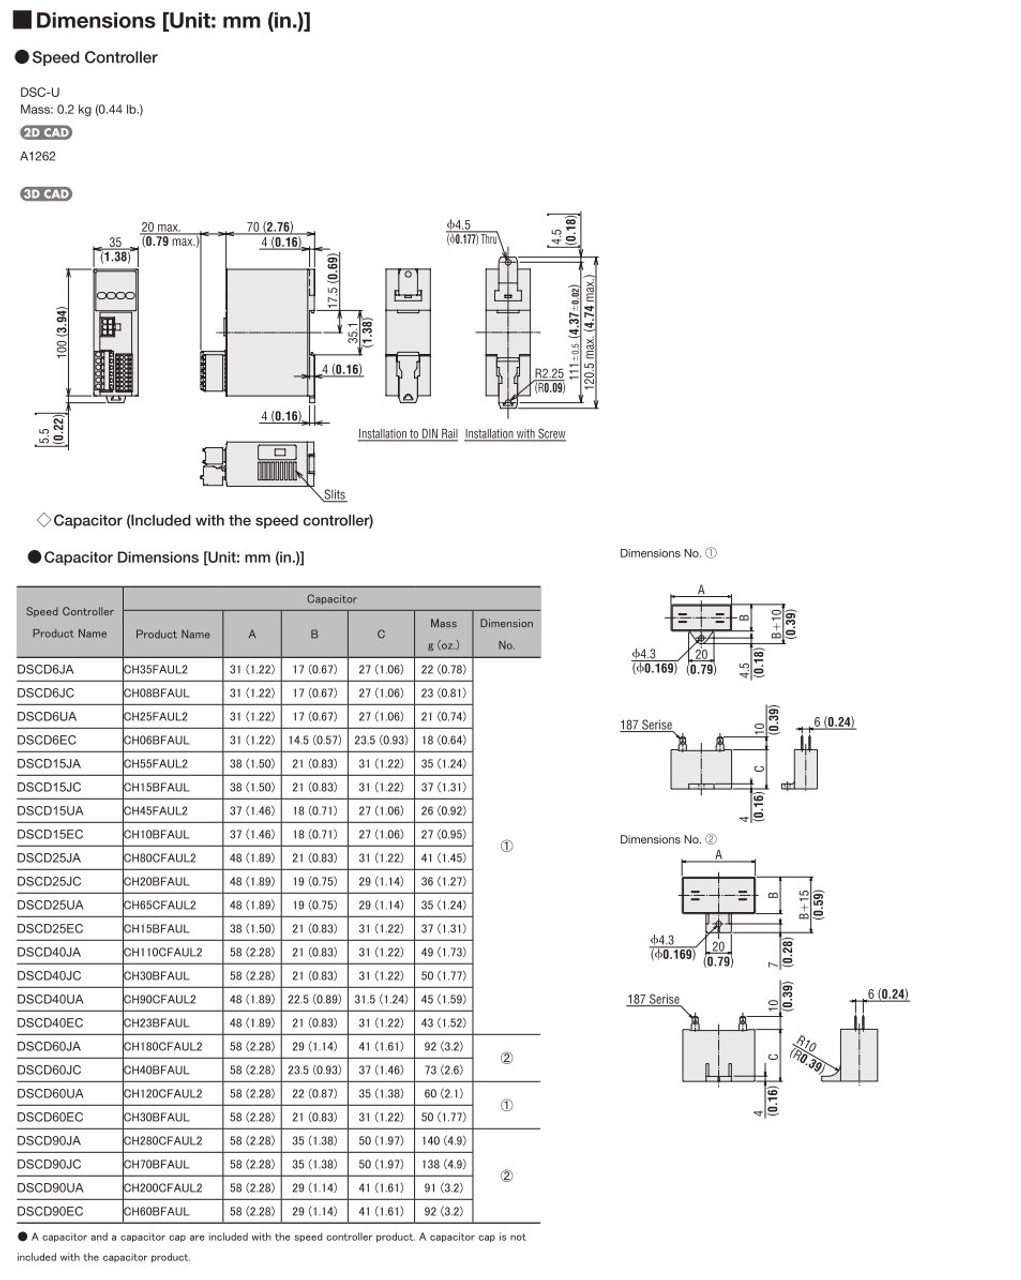 SCM315EC-5 / DSCD15EC - Dimensions